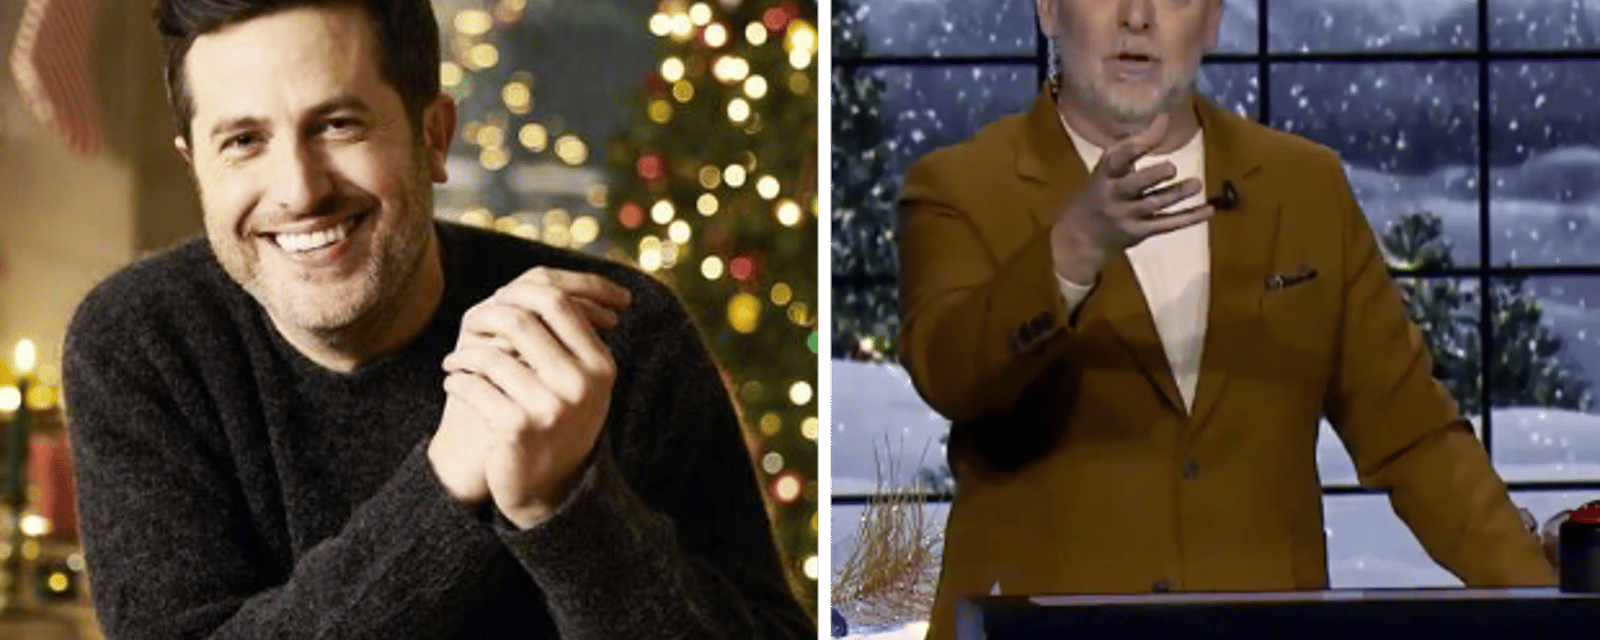 10 émissions spéciales de Noël à ne pas manquer en décembre